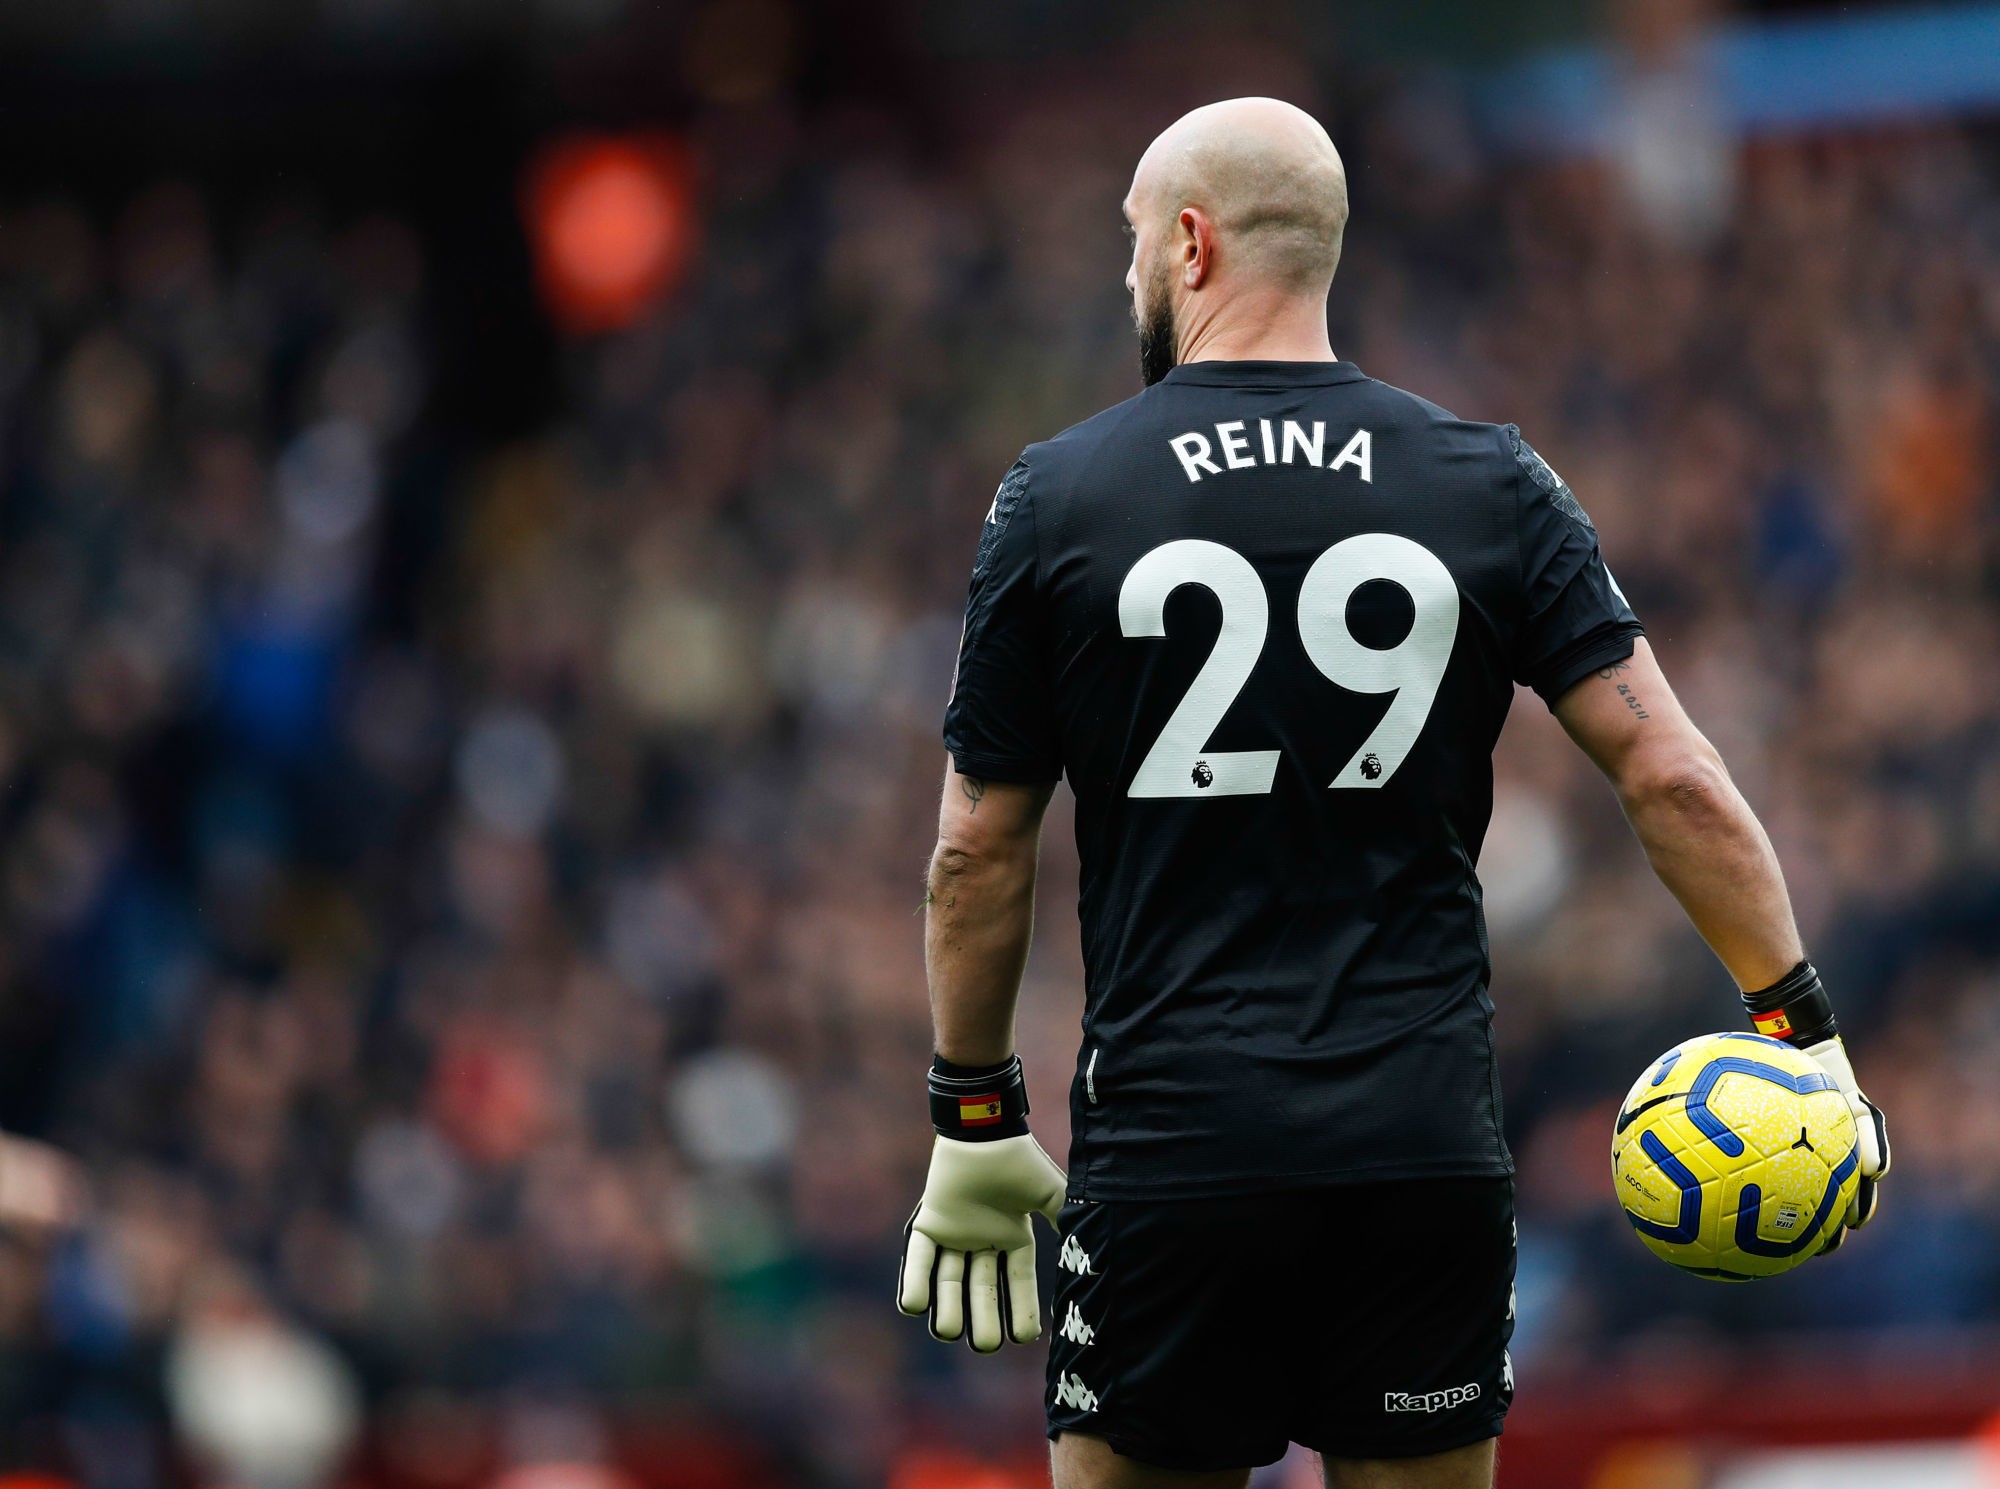 Pepe Reina - Aston Villa
Photo by Icon Sport